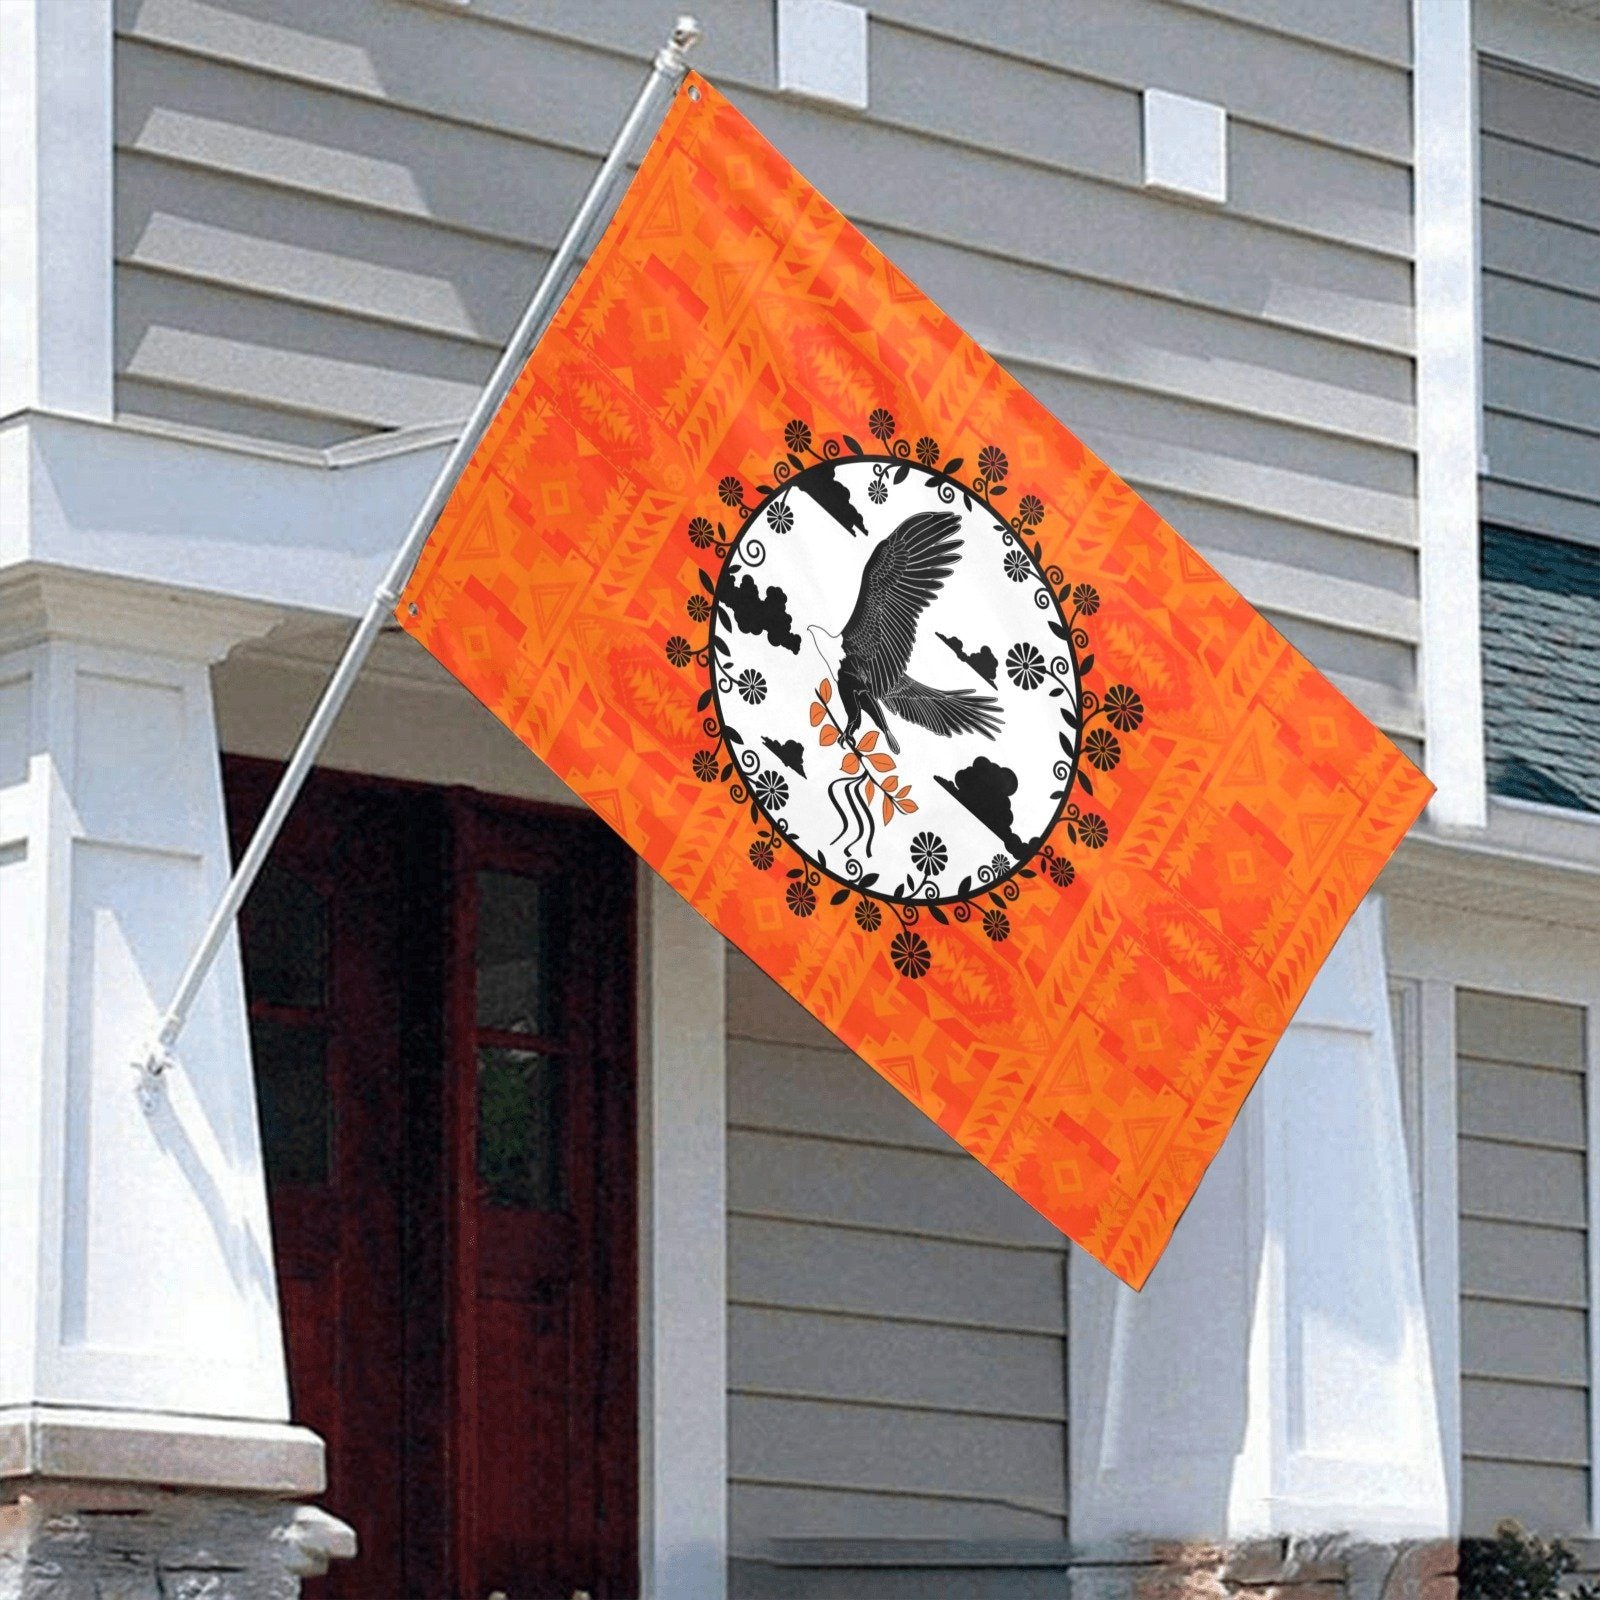 Chiefs Mountain Orange Carrying Their Prayers Garden Flag 70"x47" Garden Flag 70"x47" e-joyer 